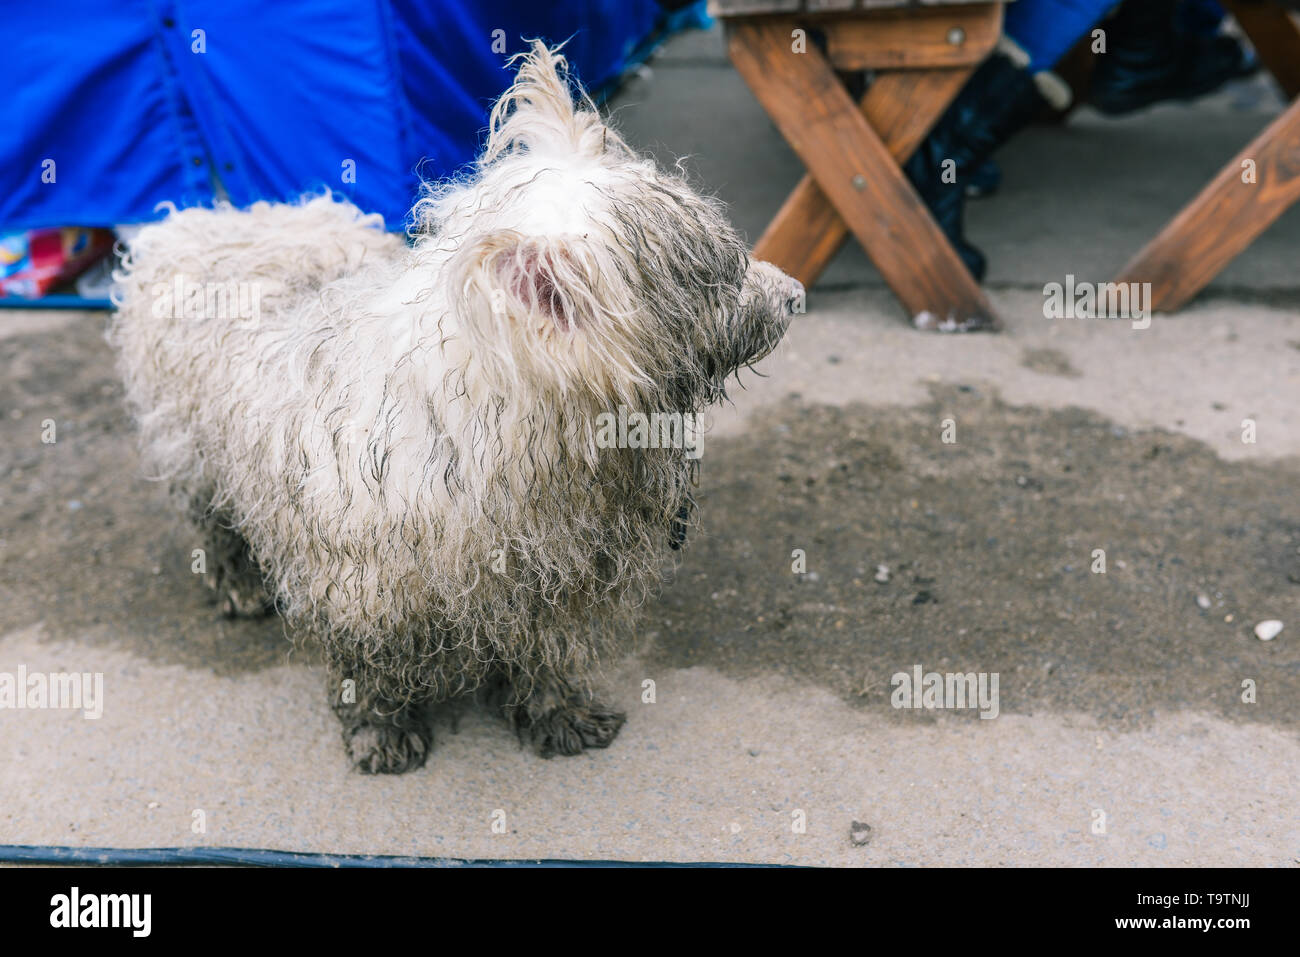 Ein streunender Hund ist auf der Suche nach seinem Besitzer. Weiß schmutziger und nasser Hund. Das Tier sieht mit einem traurigen Blick auf die vorbeiziehenden Menschen. Nahaufnahme eines Hundes Stockfoto